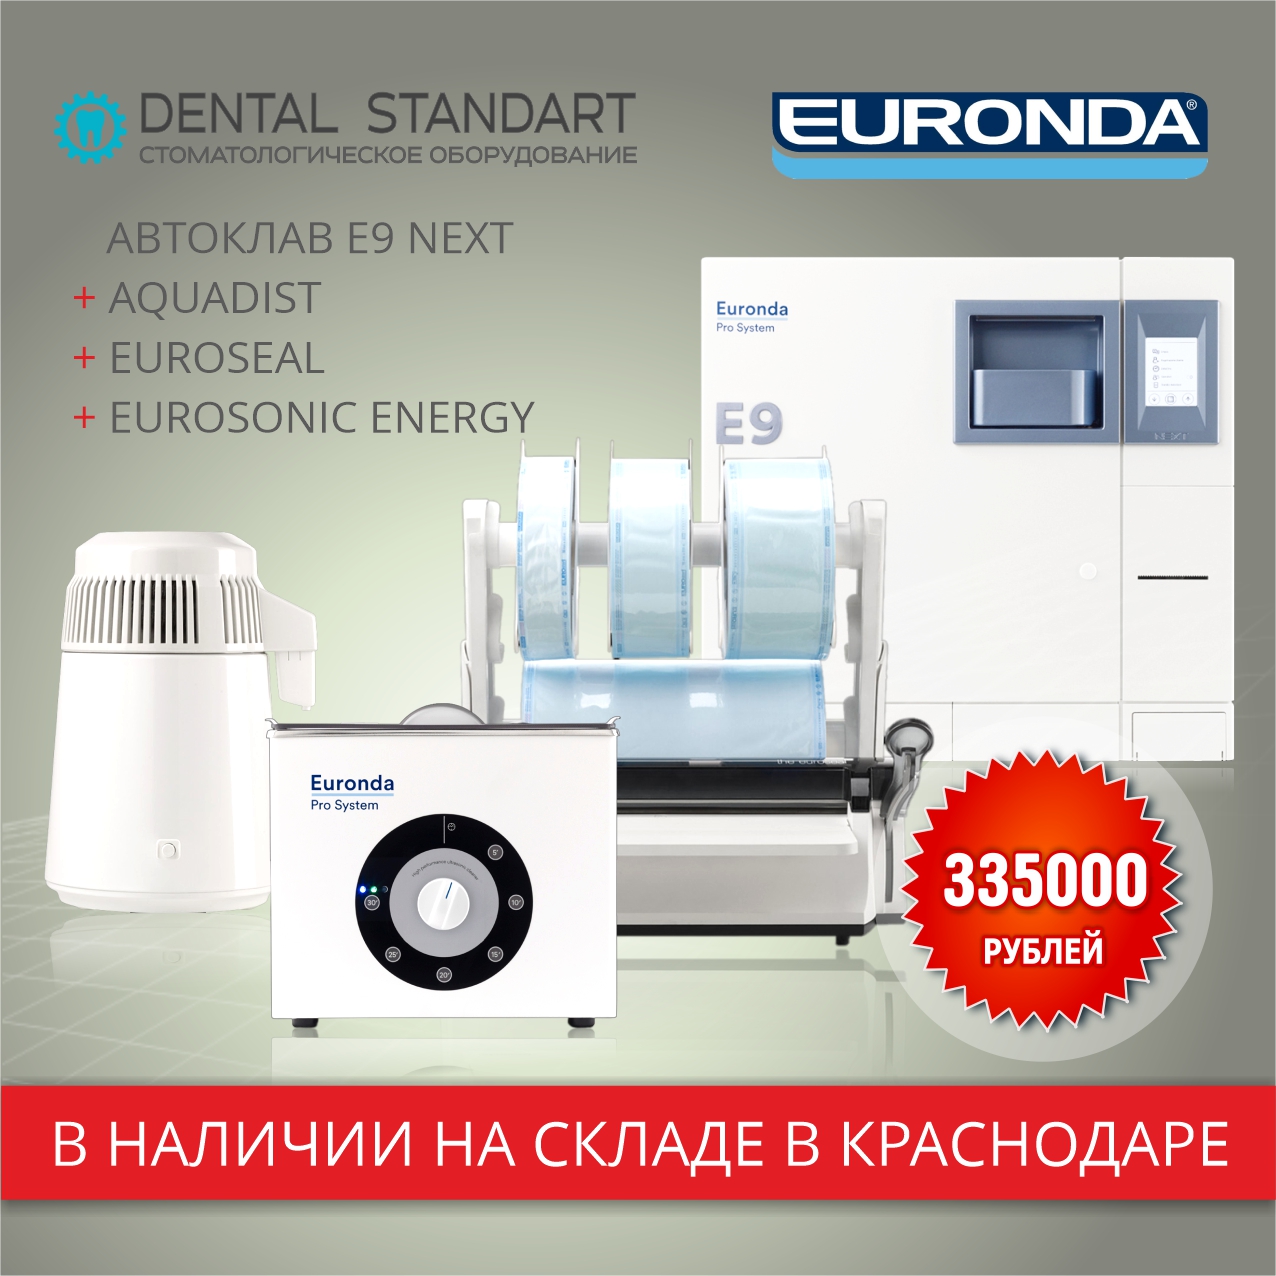 Стоматологическое оборудование Euronda в Краснодаре.